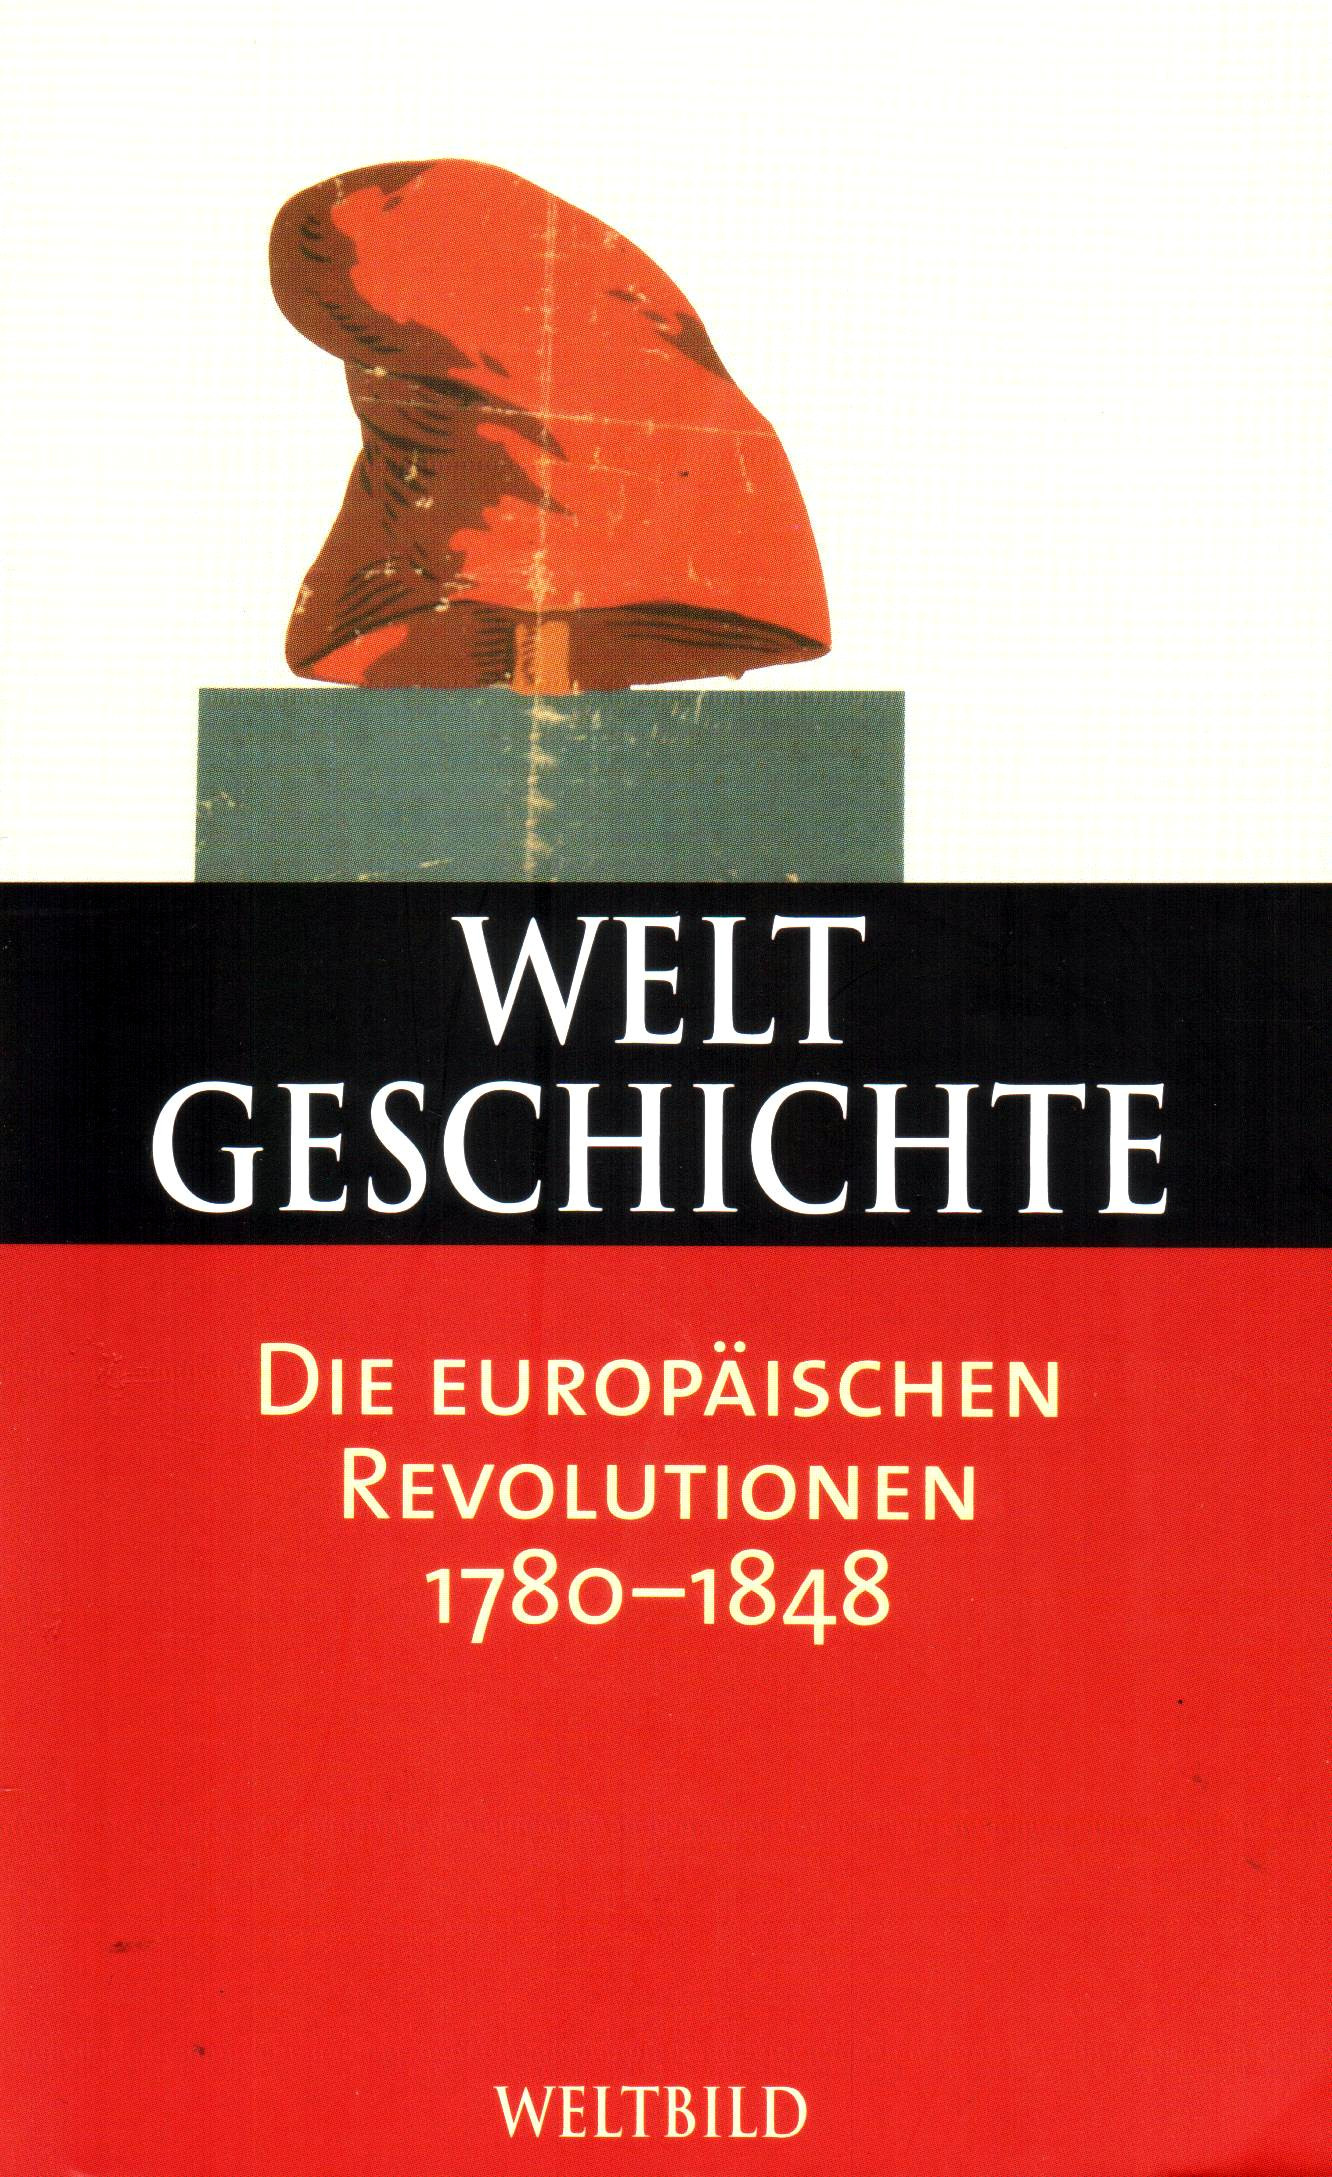 Weltgeschichte (26) Die europäischen Revolutionen 1780-1848